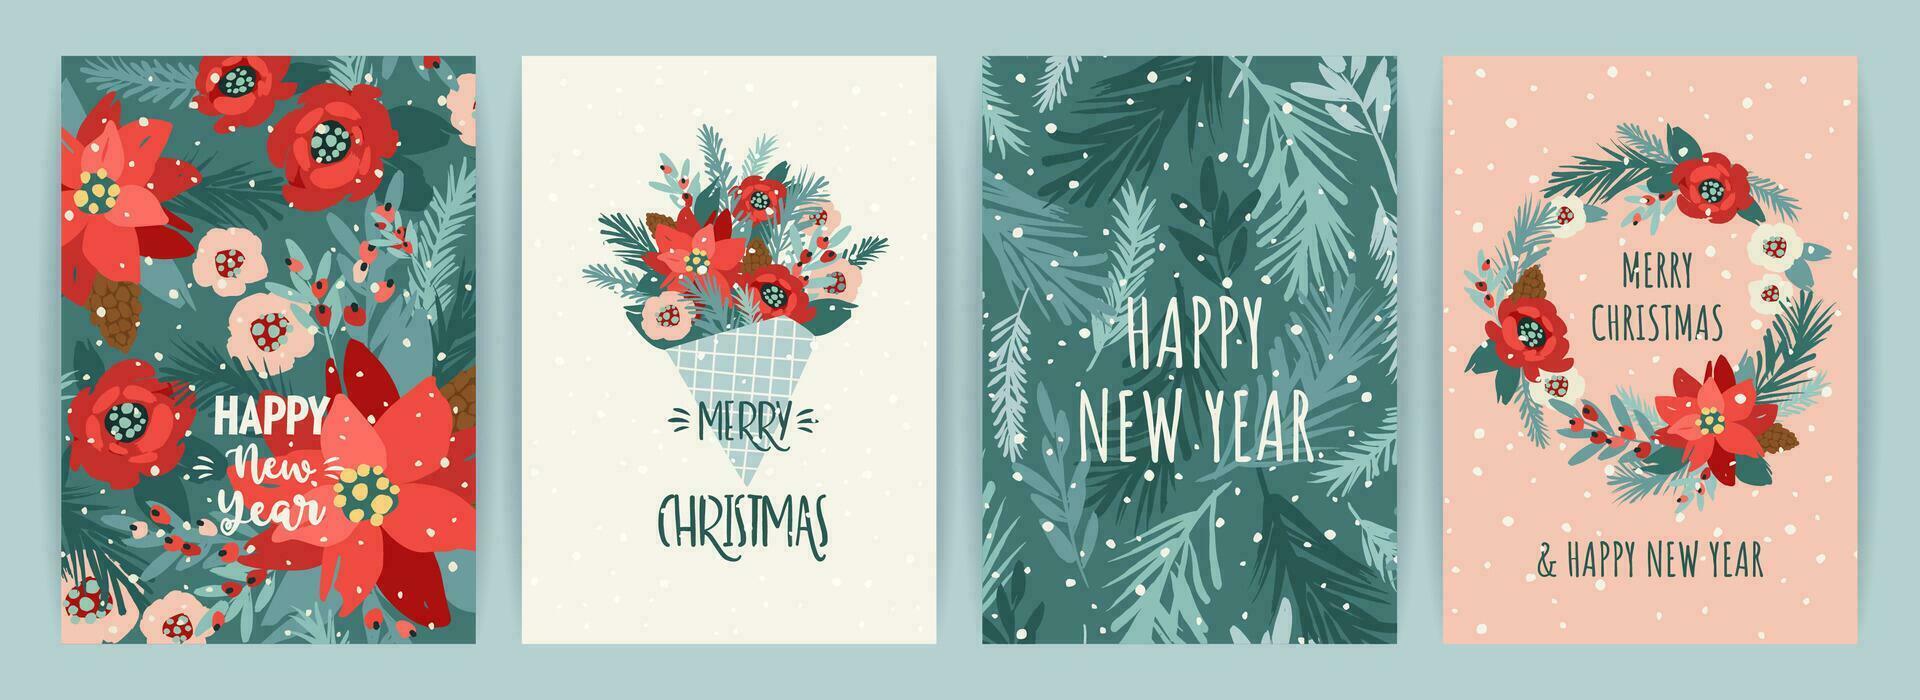 Weihnachten und glücklich Neu Jahr Karten mit Blumen, Weihnachten Baum, Geäst, Blätter, Beeren, Schneeflocken. modisch retro Stil. Vektor Design Vorlagen.